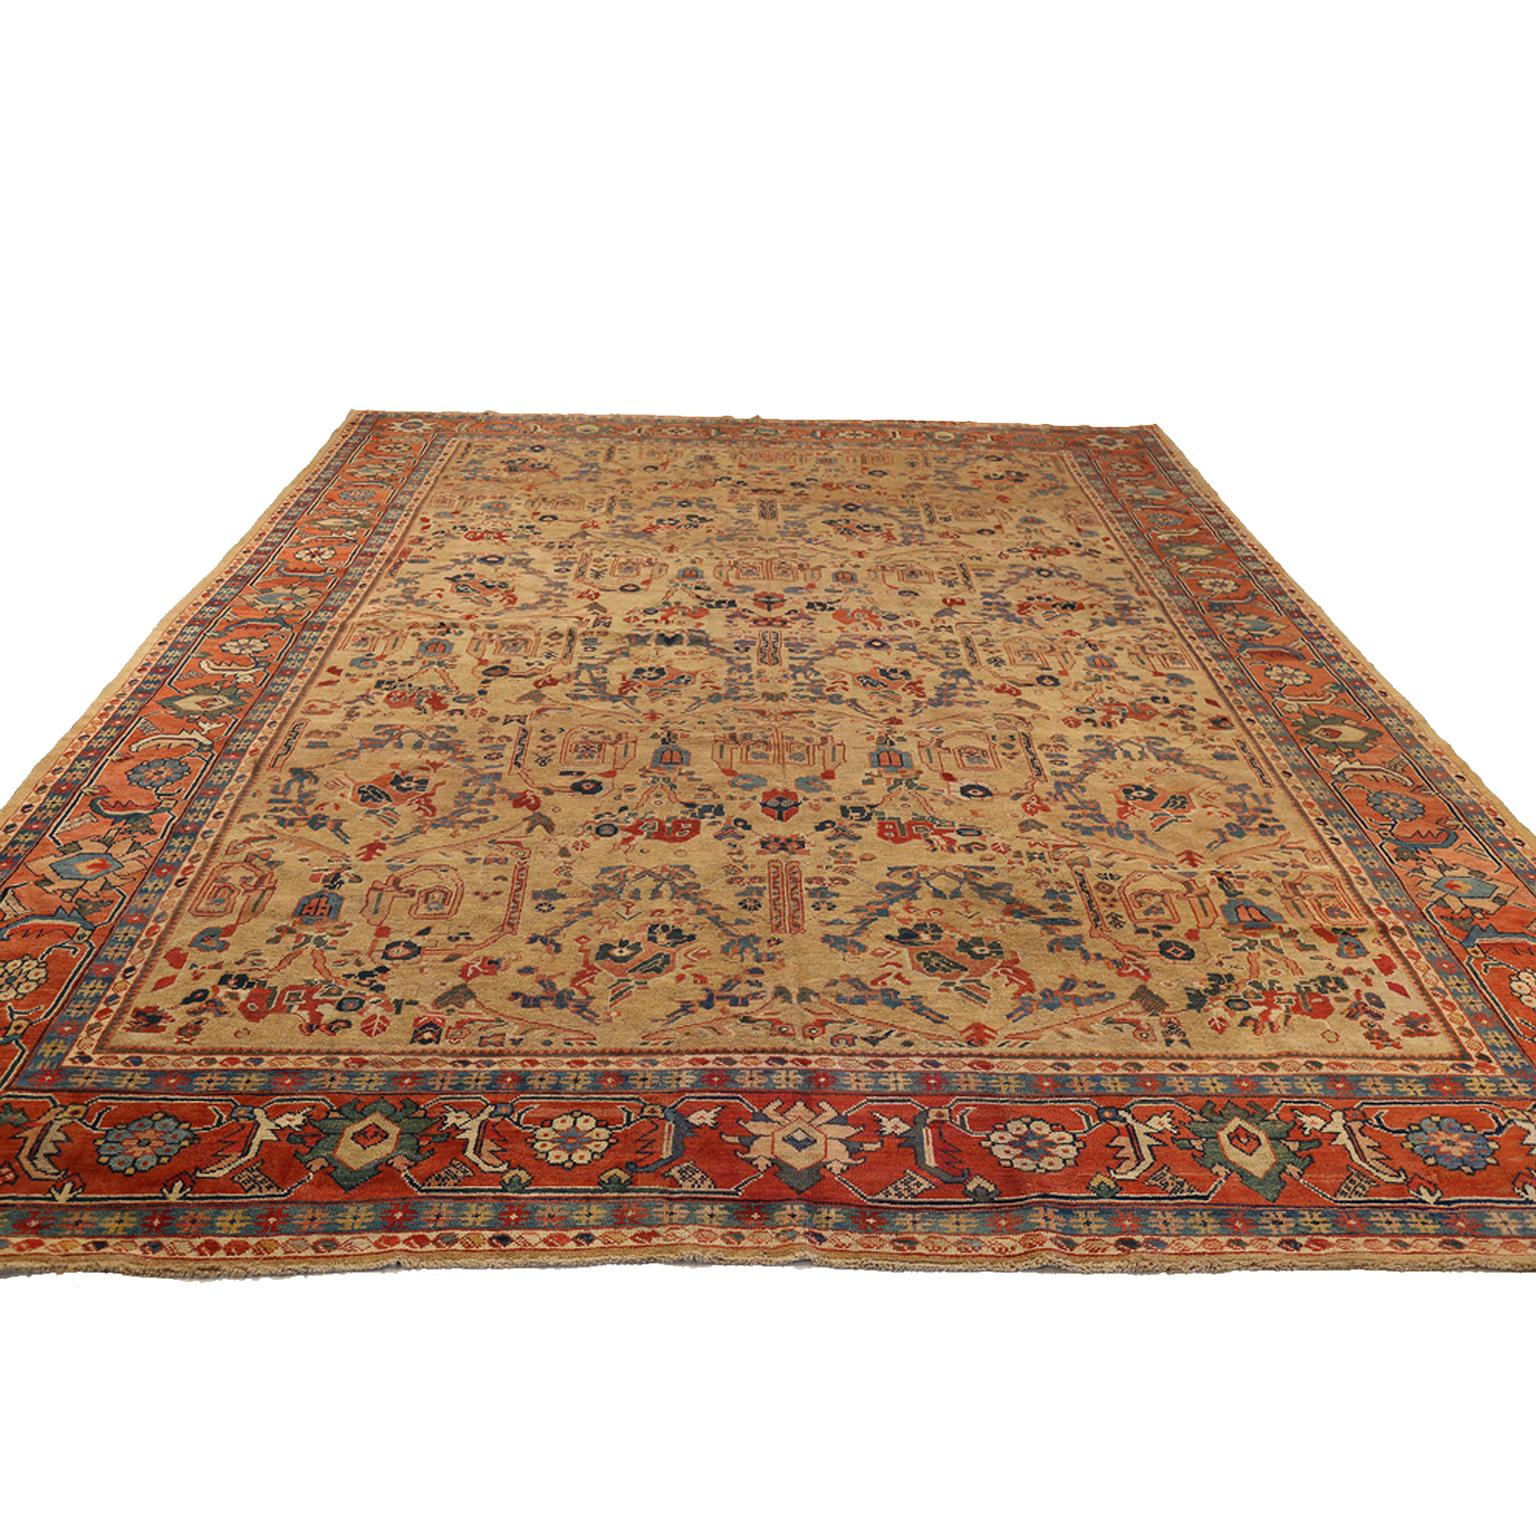 tapis persan ancien datant des années 1930, tissé à la main avec une laine exquise et coloré avec de riches teintures organiques provenant de légumes et de plantes. Il présente un motif de fleurs, de diamants et d'éléments de scarabée qui a été